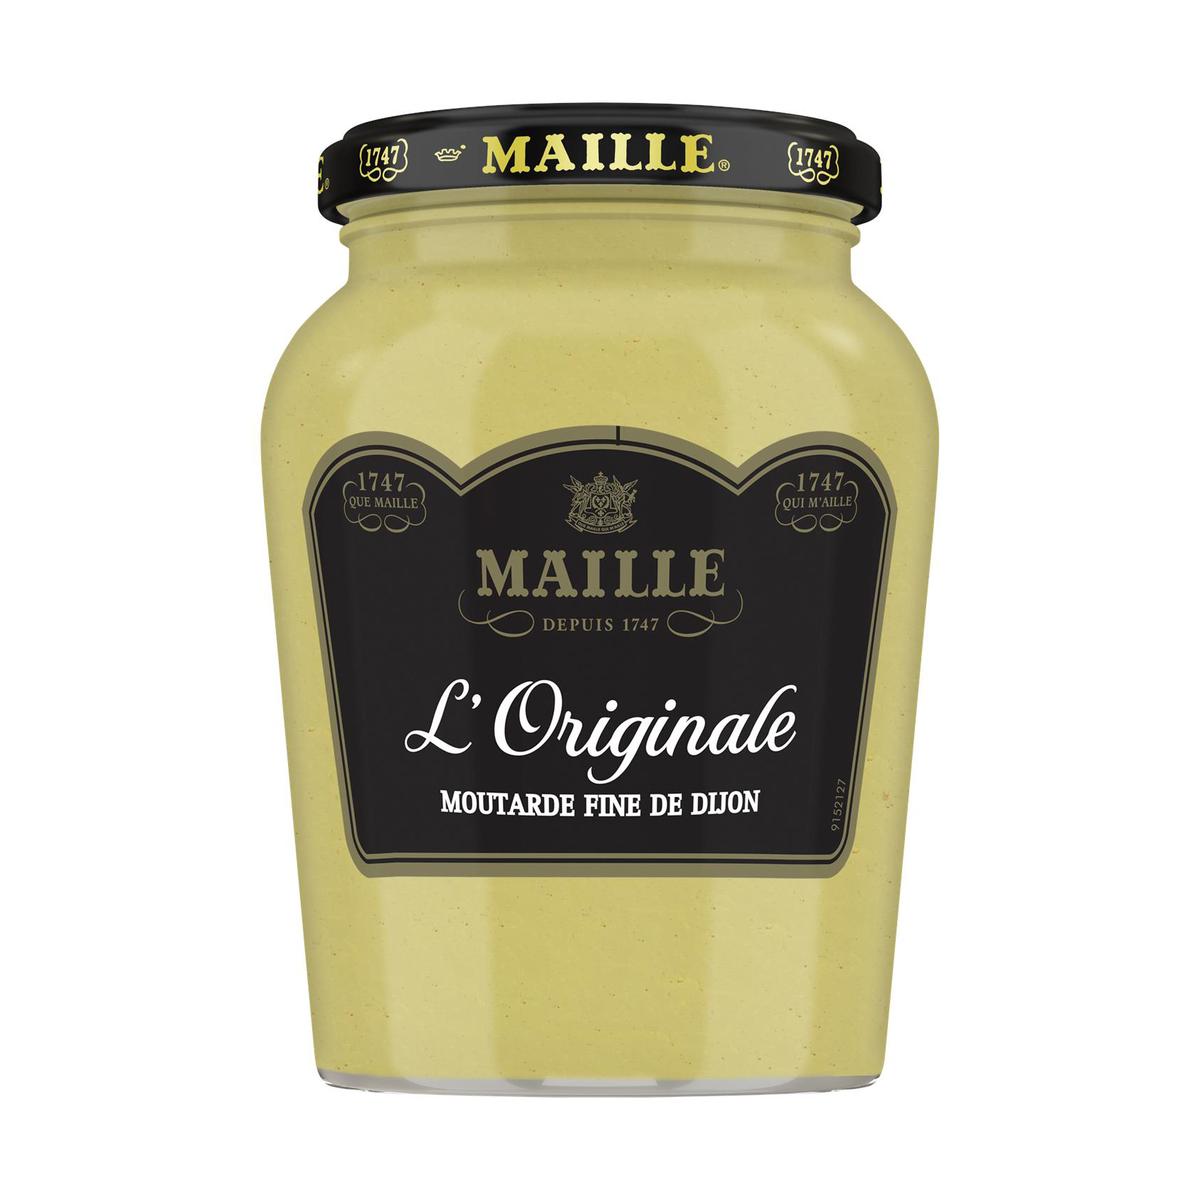 Maille Mustard FR_AU MIEL 230 GR - 230 g